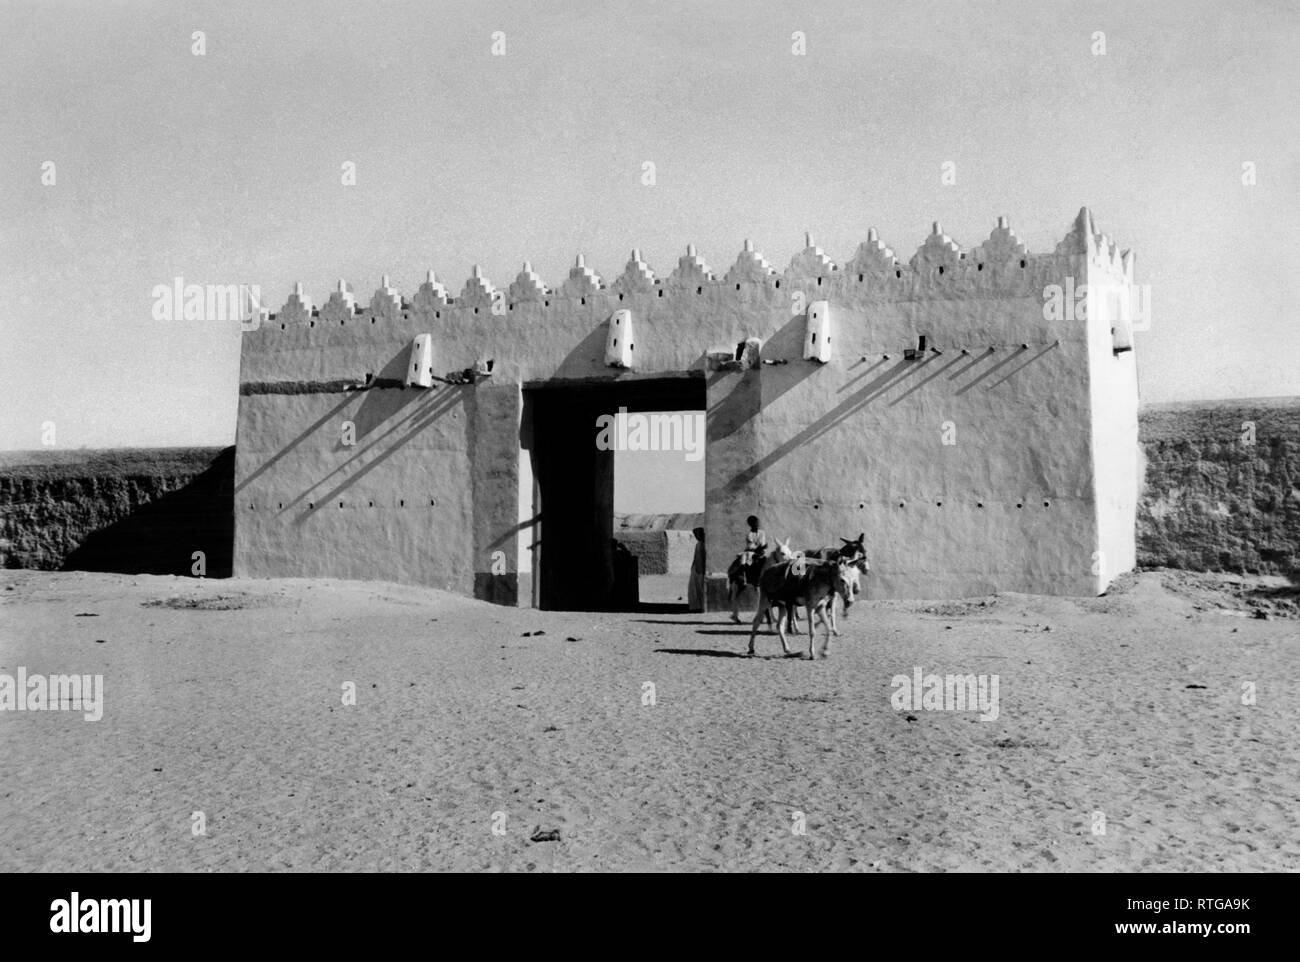 Saoudite, al Koweït, une porte sur le village, 1954 Banque D'Images